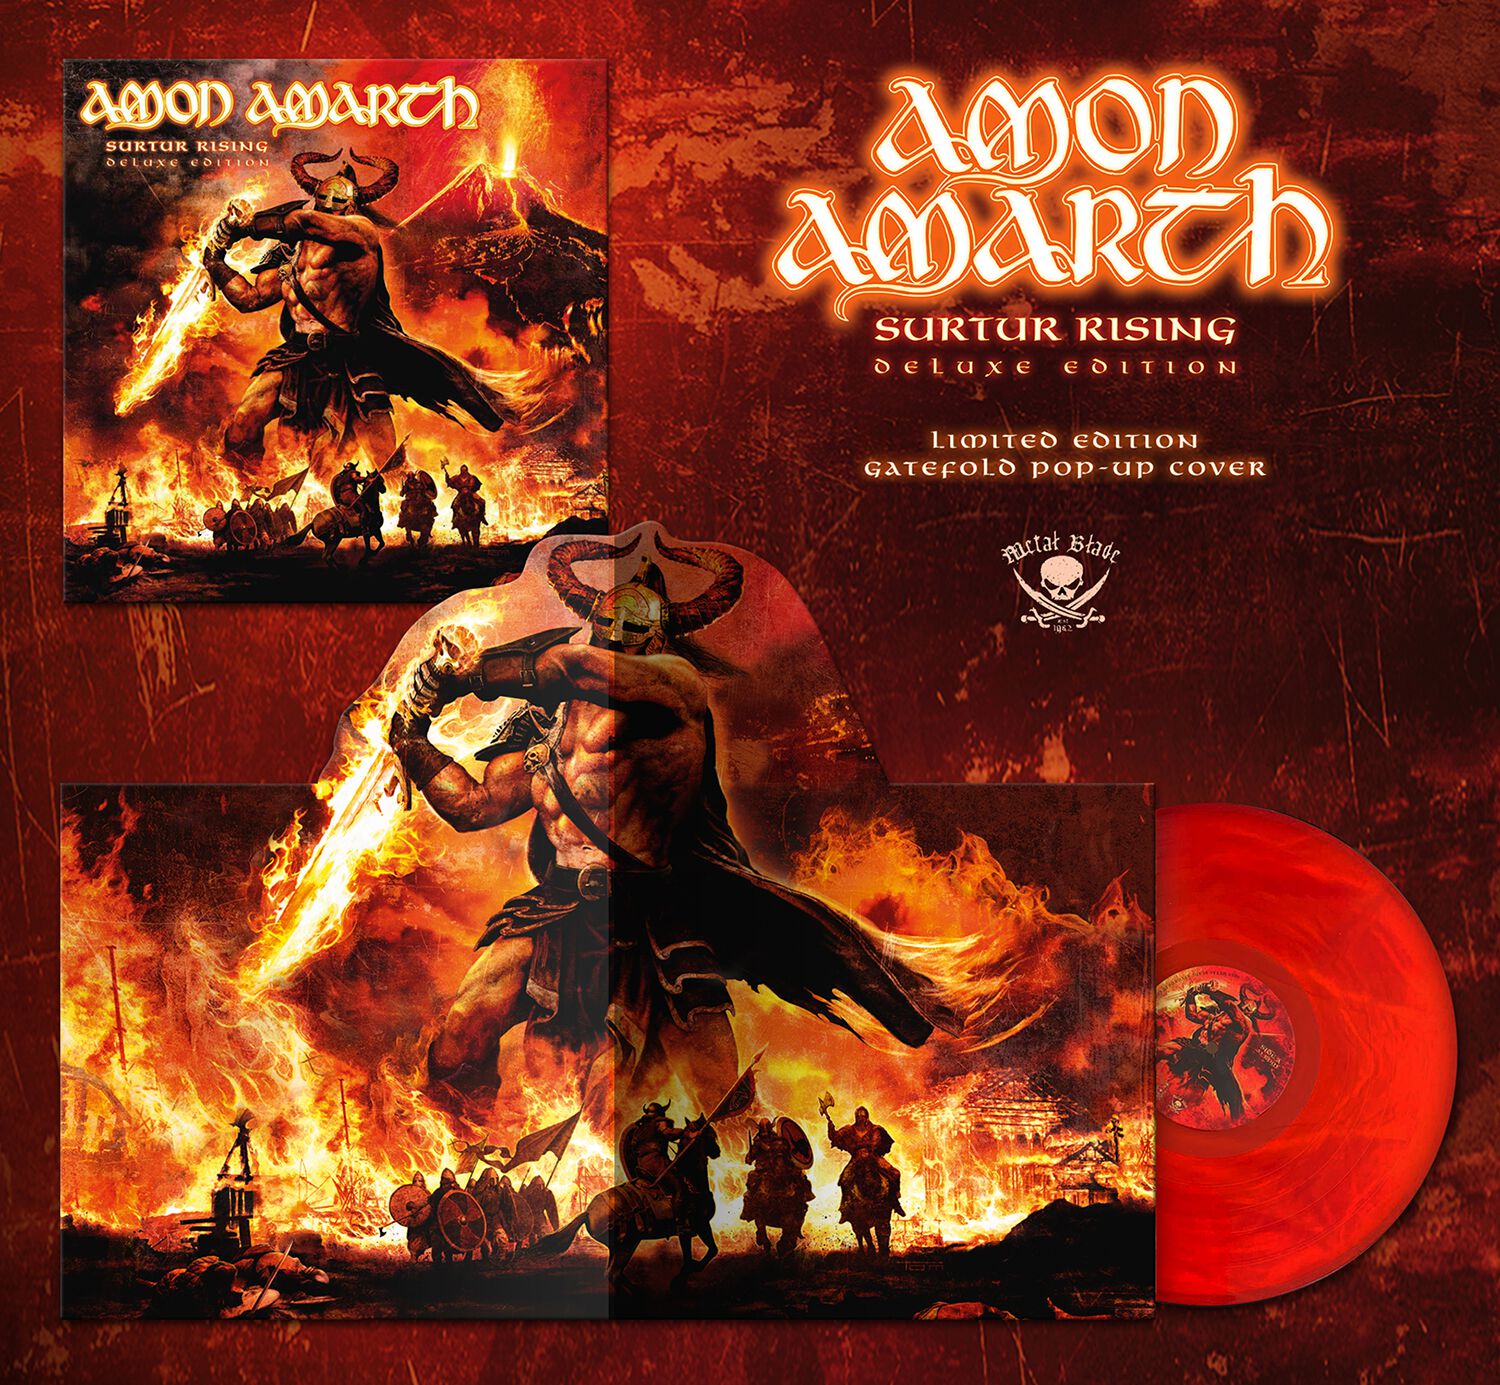 Surtur rising von Amon Amarth - LP (Coloured, Limited Edition, Re-Release, Standard)